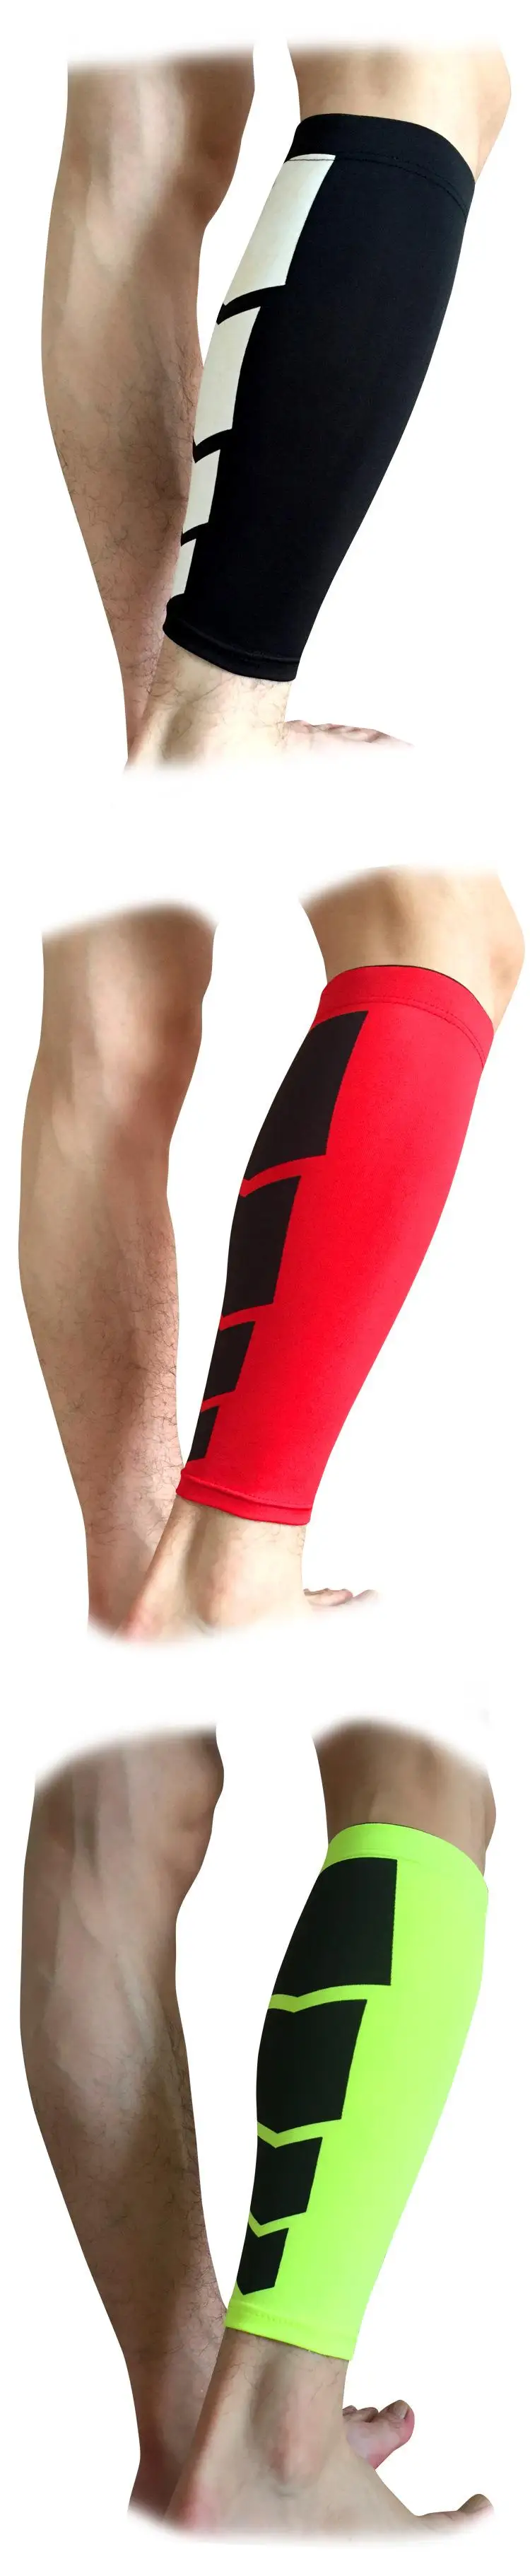 YWYD 1 пара(2 шт) многофункциональные щитки для голени футбольные защитные подушечки для голени Компрессионные рукава футбольные спортивные инструменты для бега